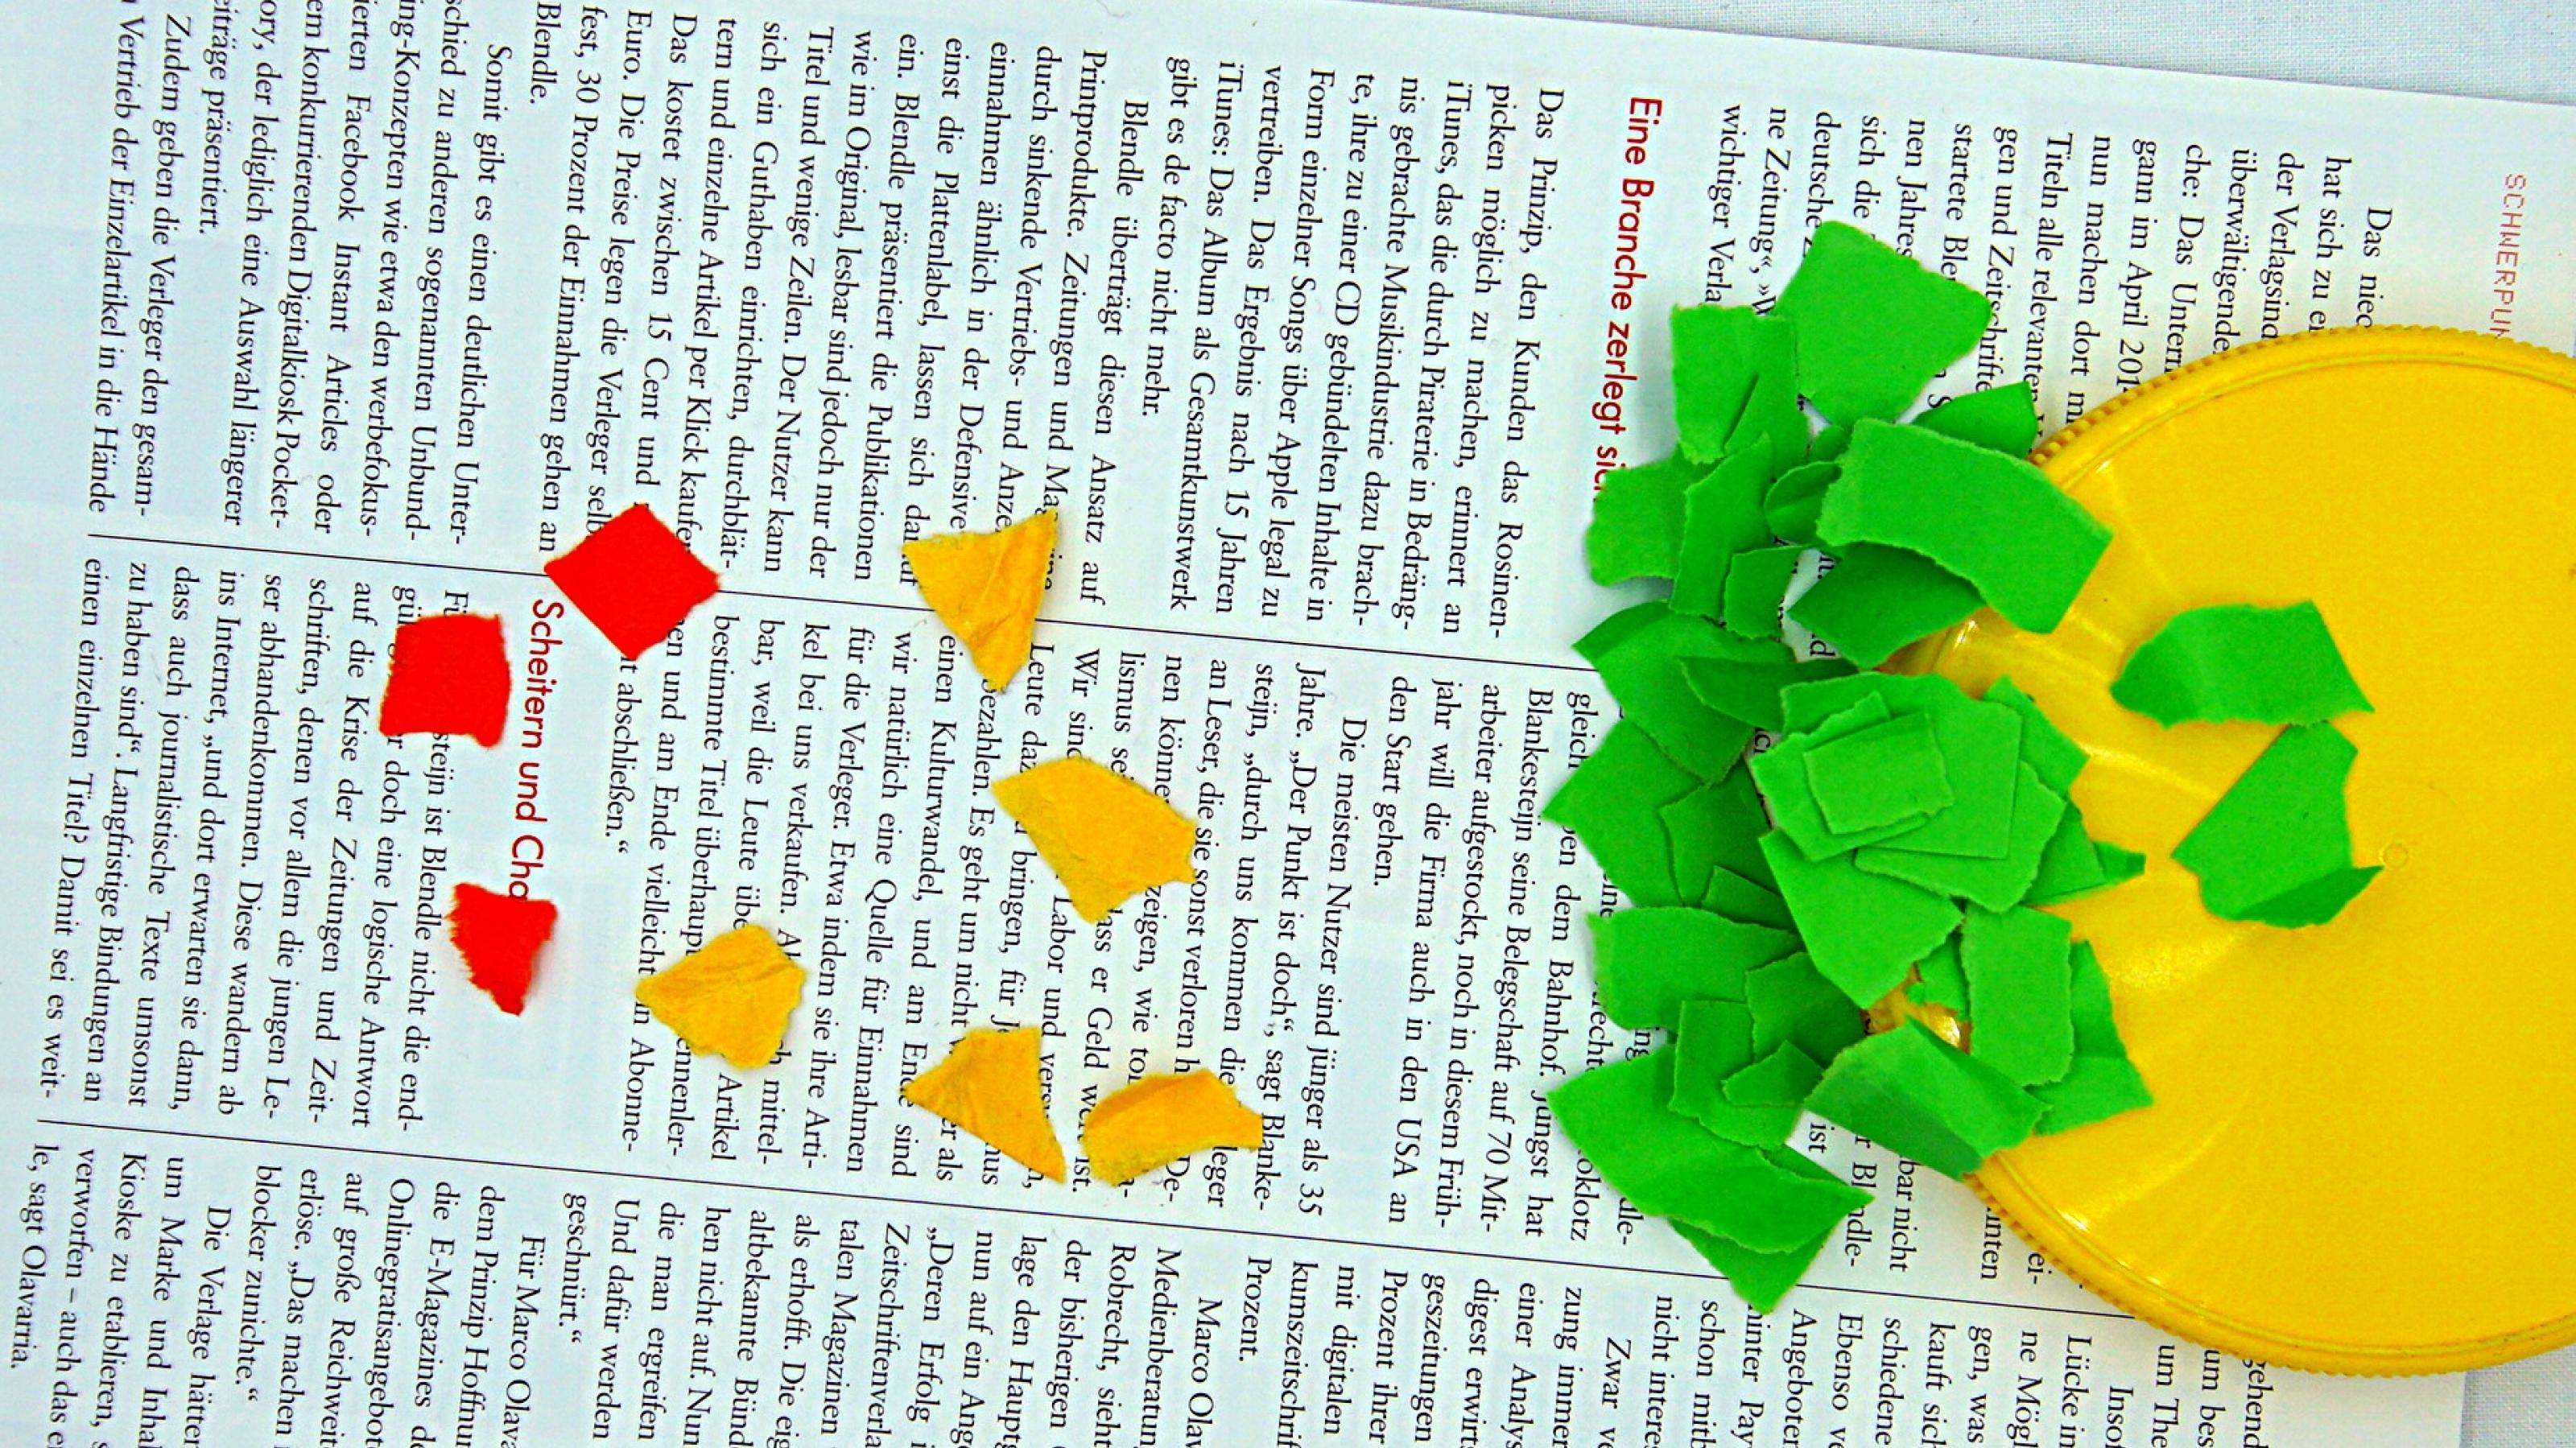 Papierschnipsel, die die drei Farben der Innovation zeigen